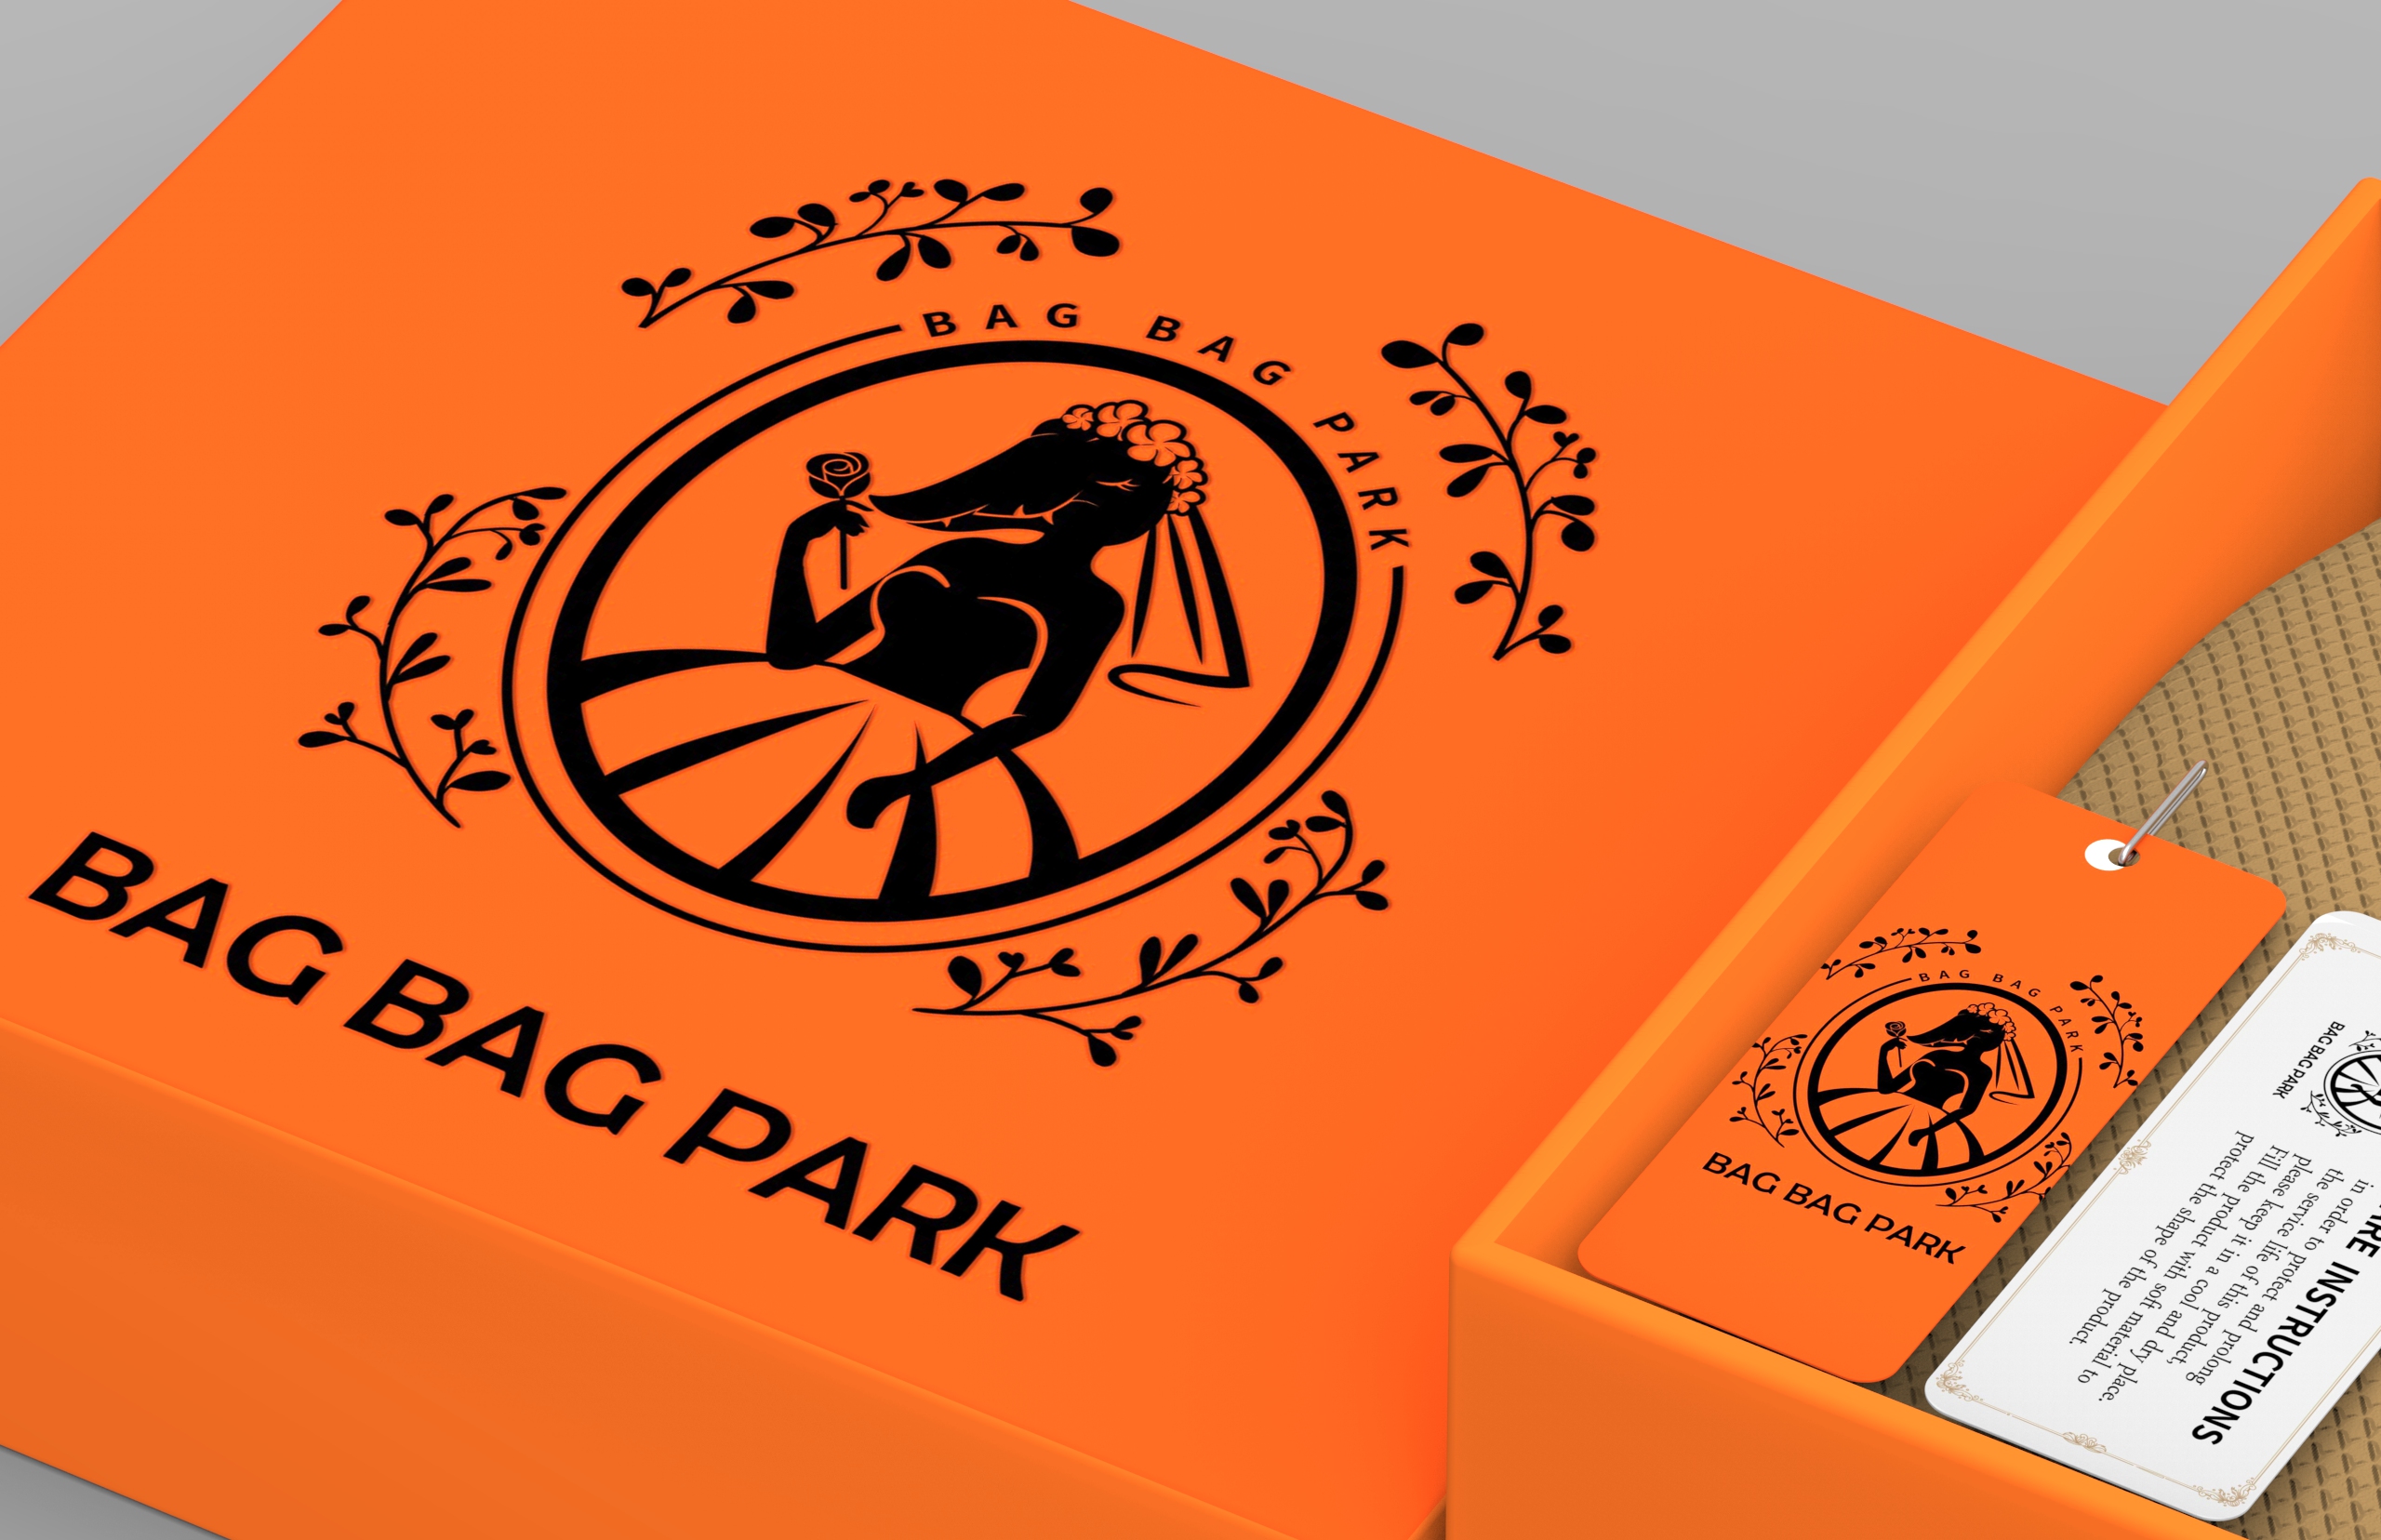 包包公园产品形象设计平面设计